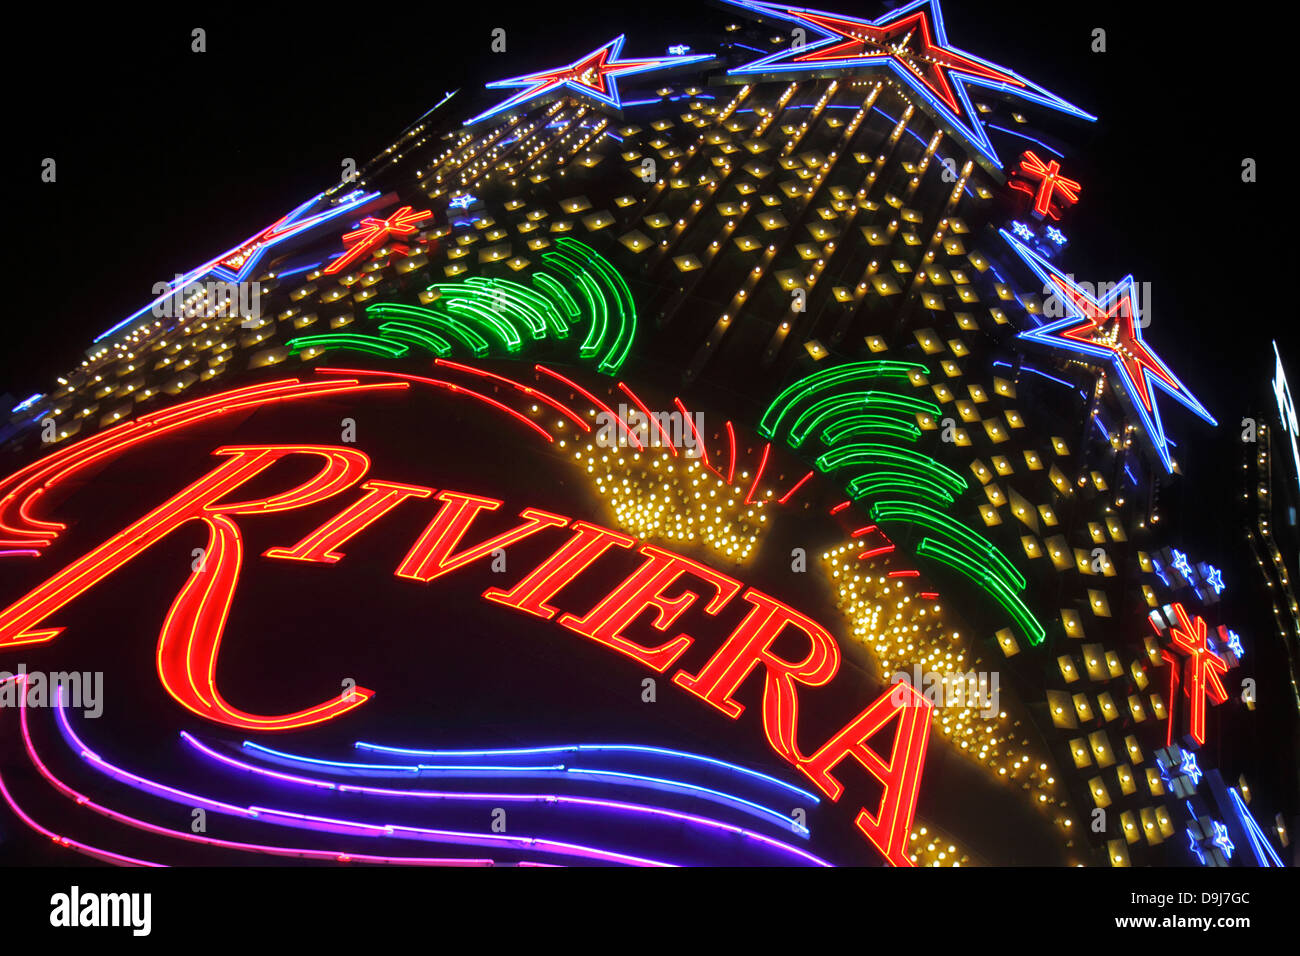 Riviera Hotel Casino Las Vegas Nevada USA Stock Photo - Alamy